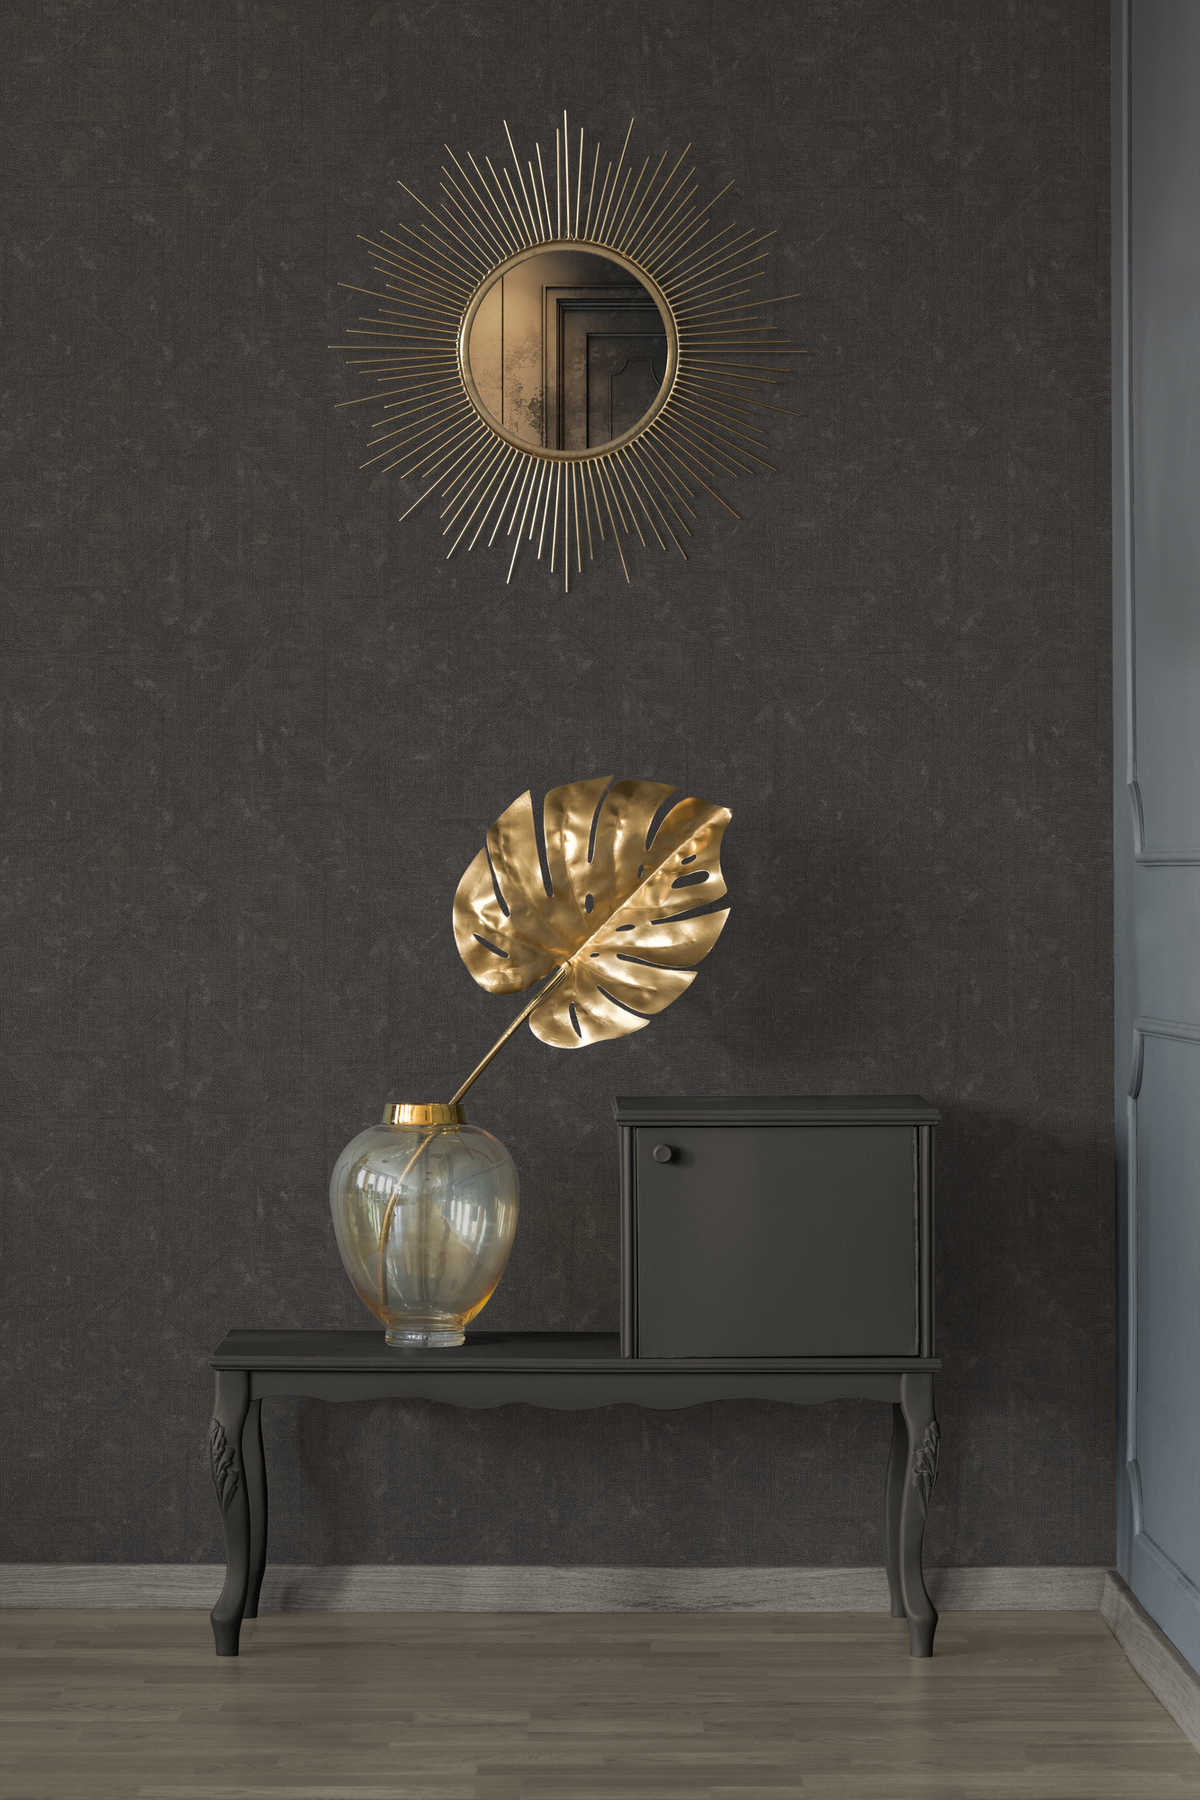             Donkerbruin vliesbehang met subtiel patroon - bruin, zwart, brons
        